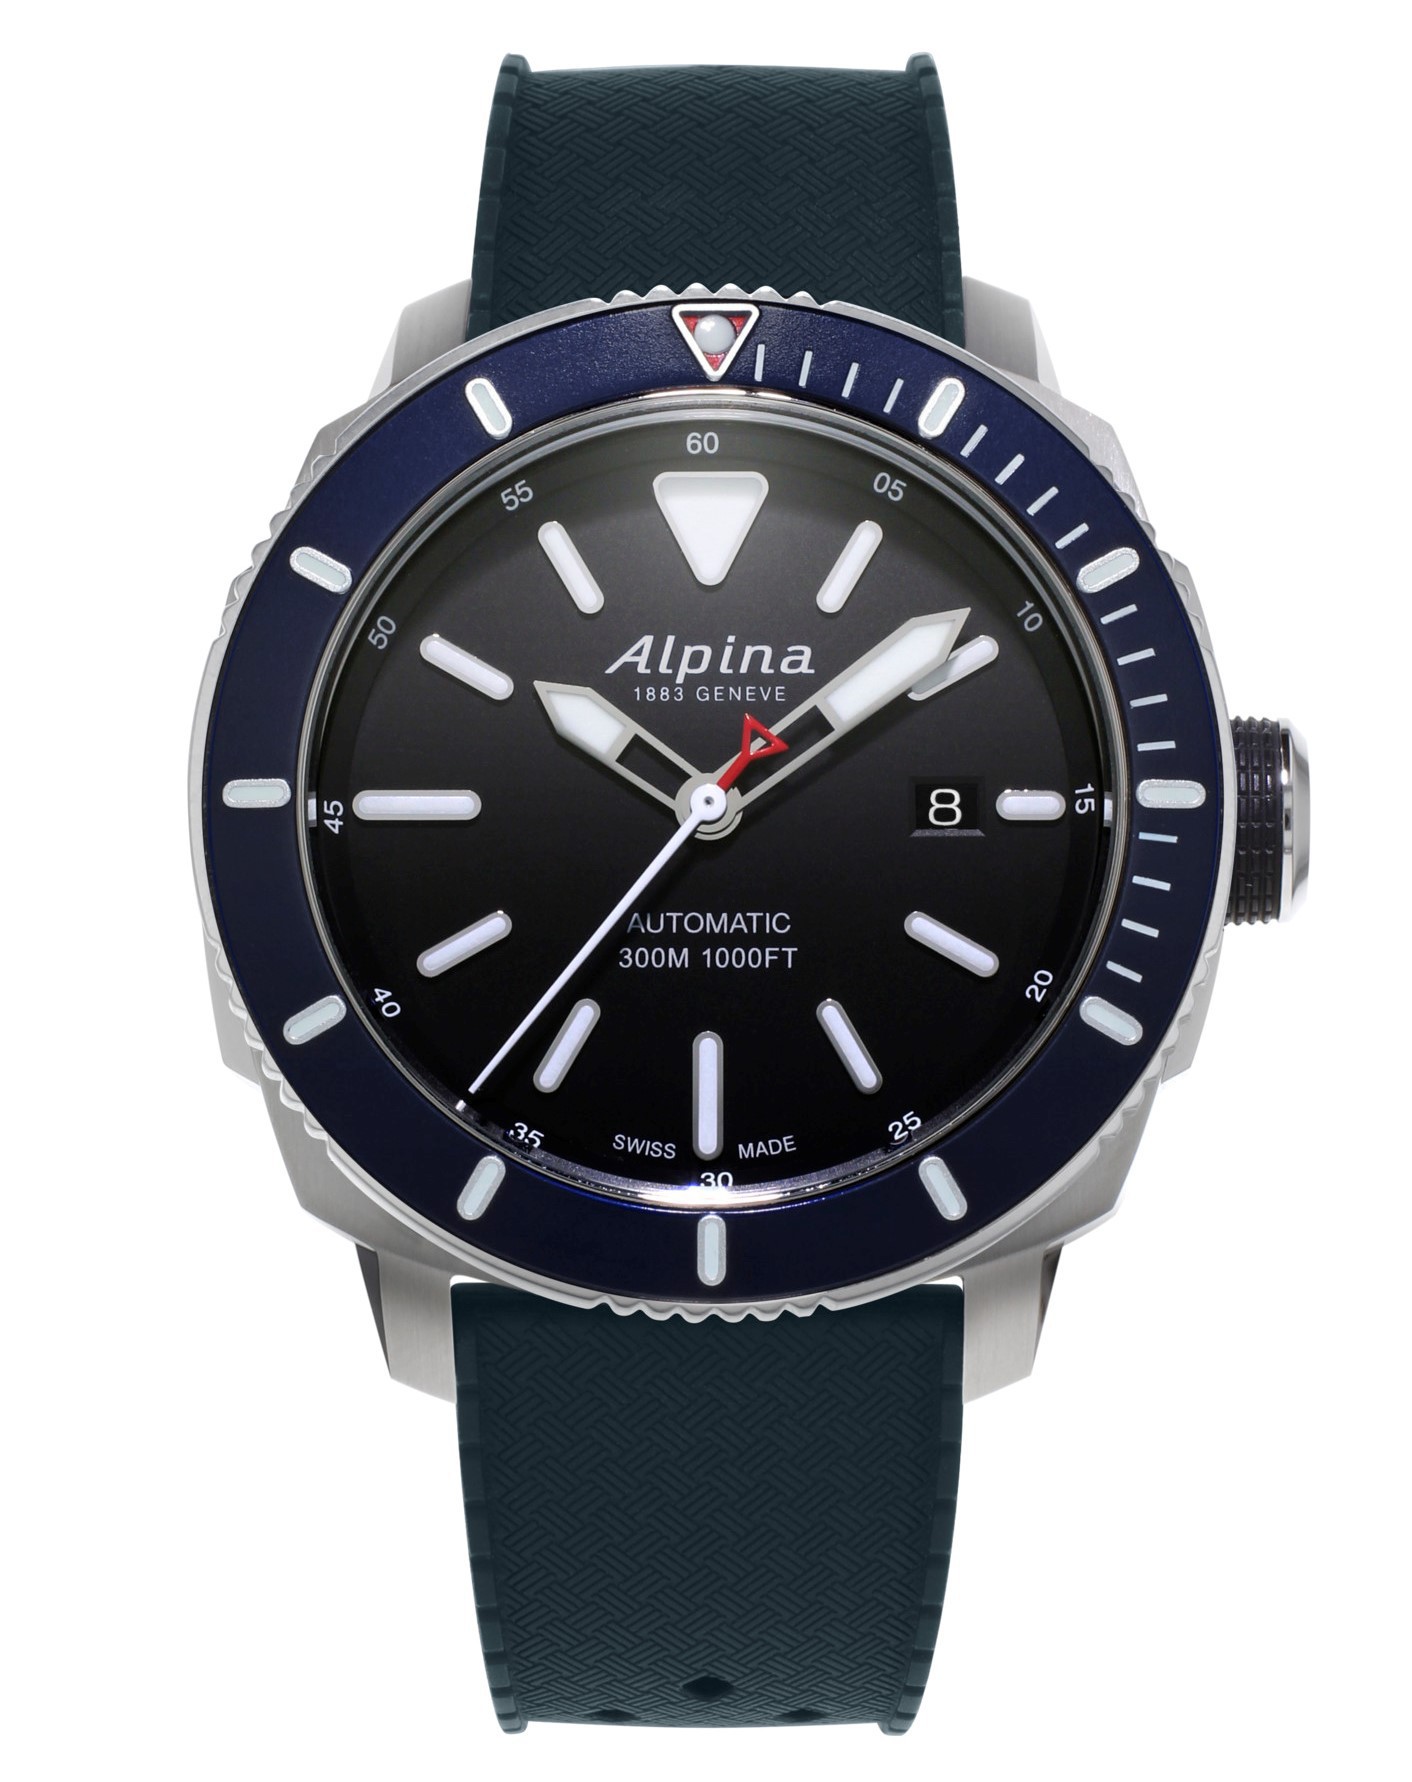 Alpina часы. Часы Alpina al525. Часы Alpina Seastrong Diver 300. Наручные часы Alpina al-525b4e6b. Часы Alpina al 525 мужские.